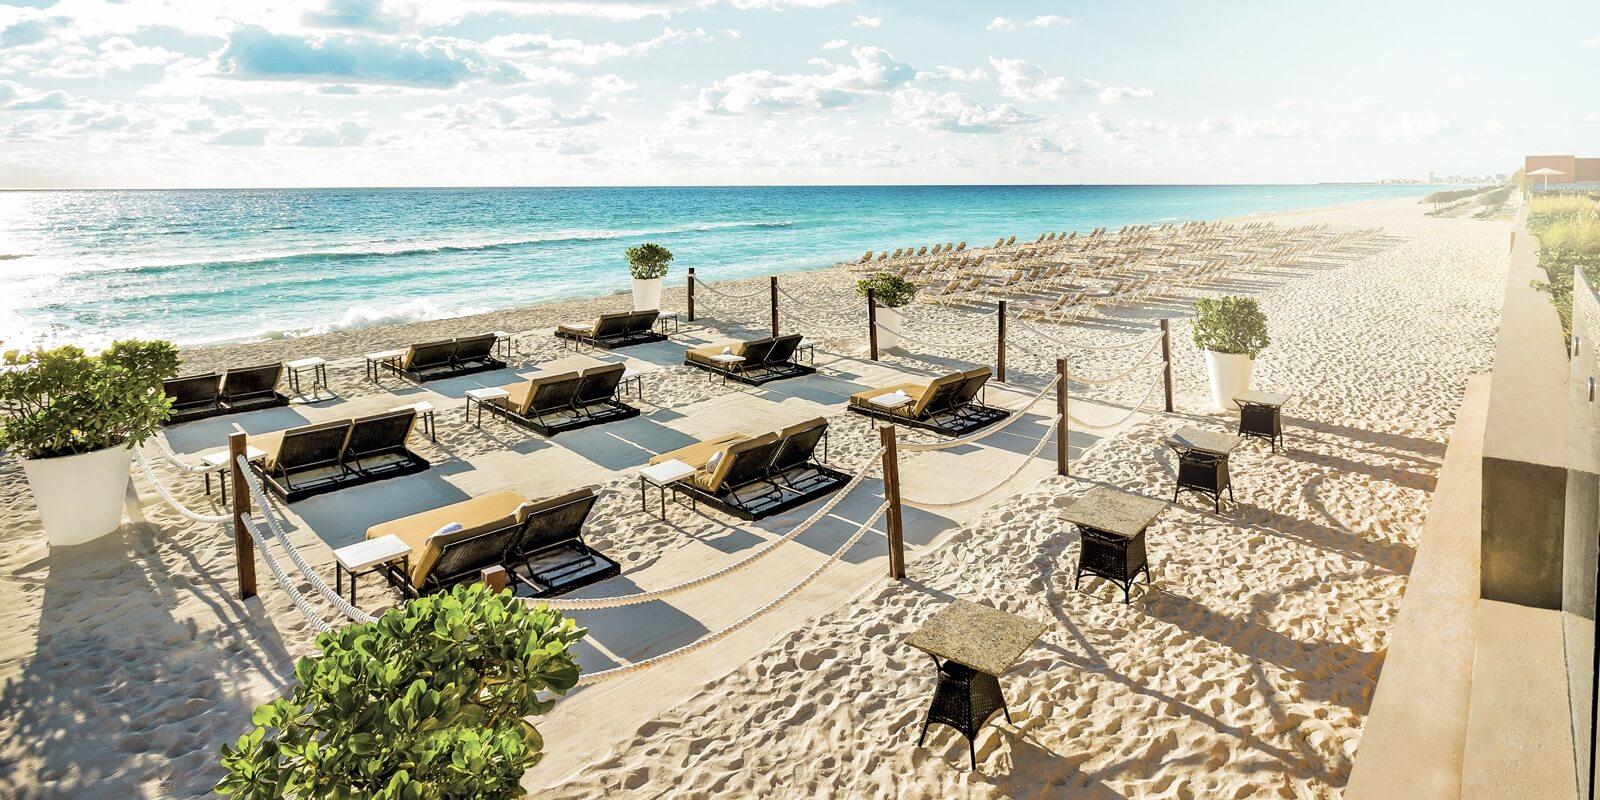 Vakantie Cancun